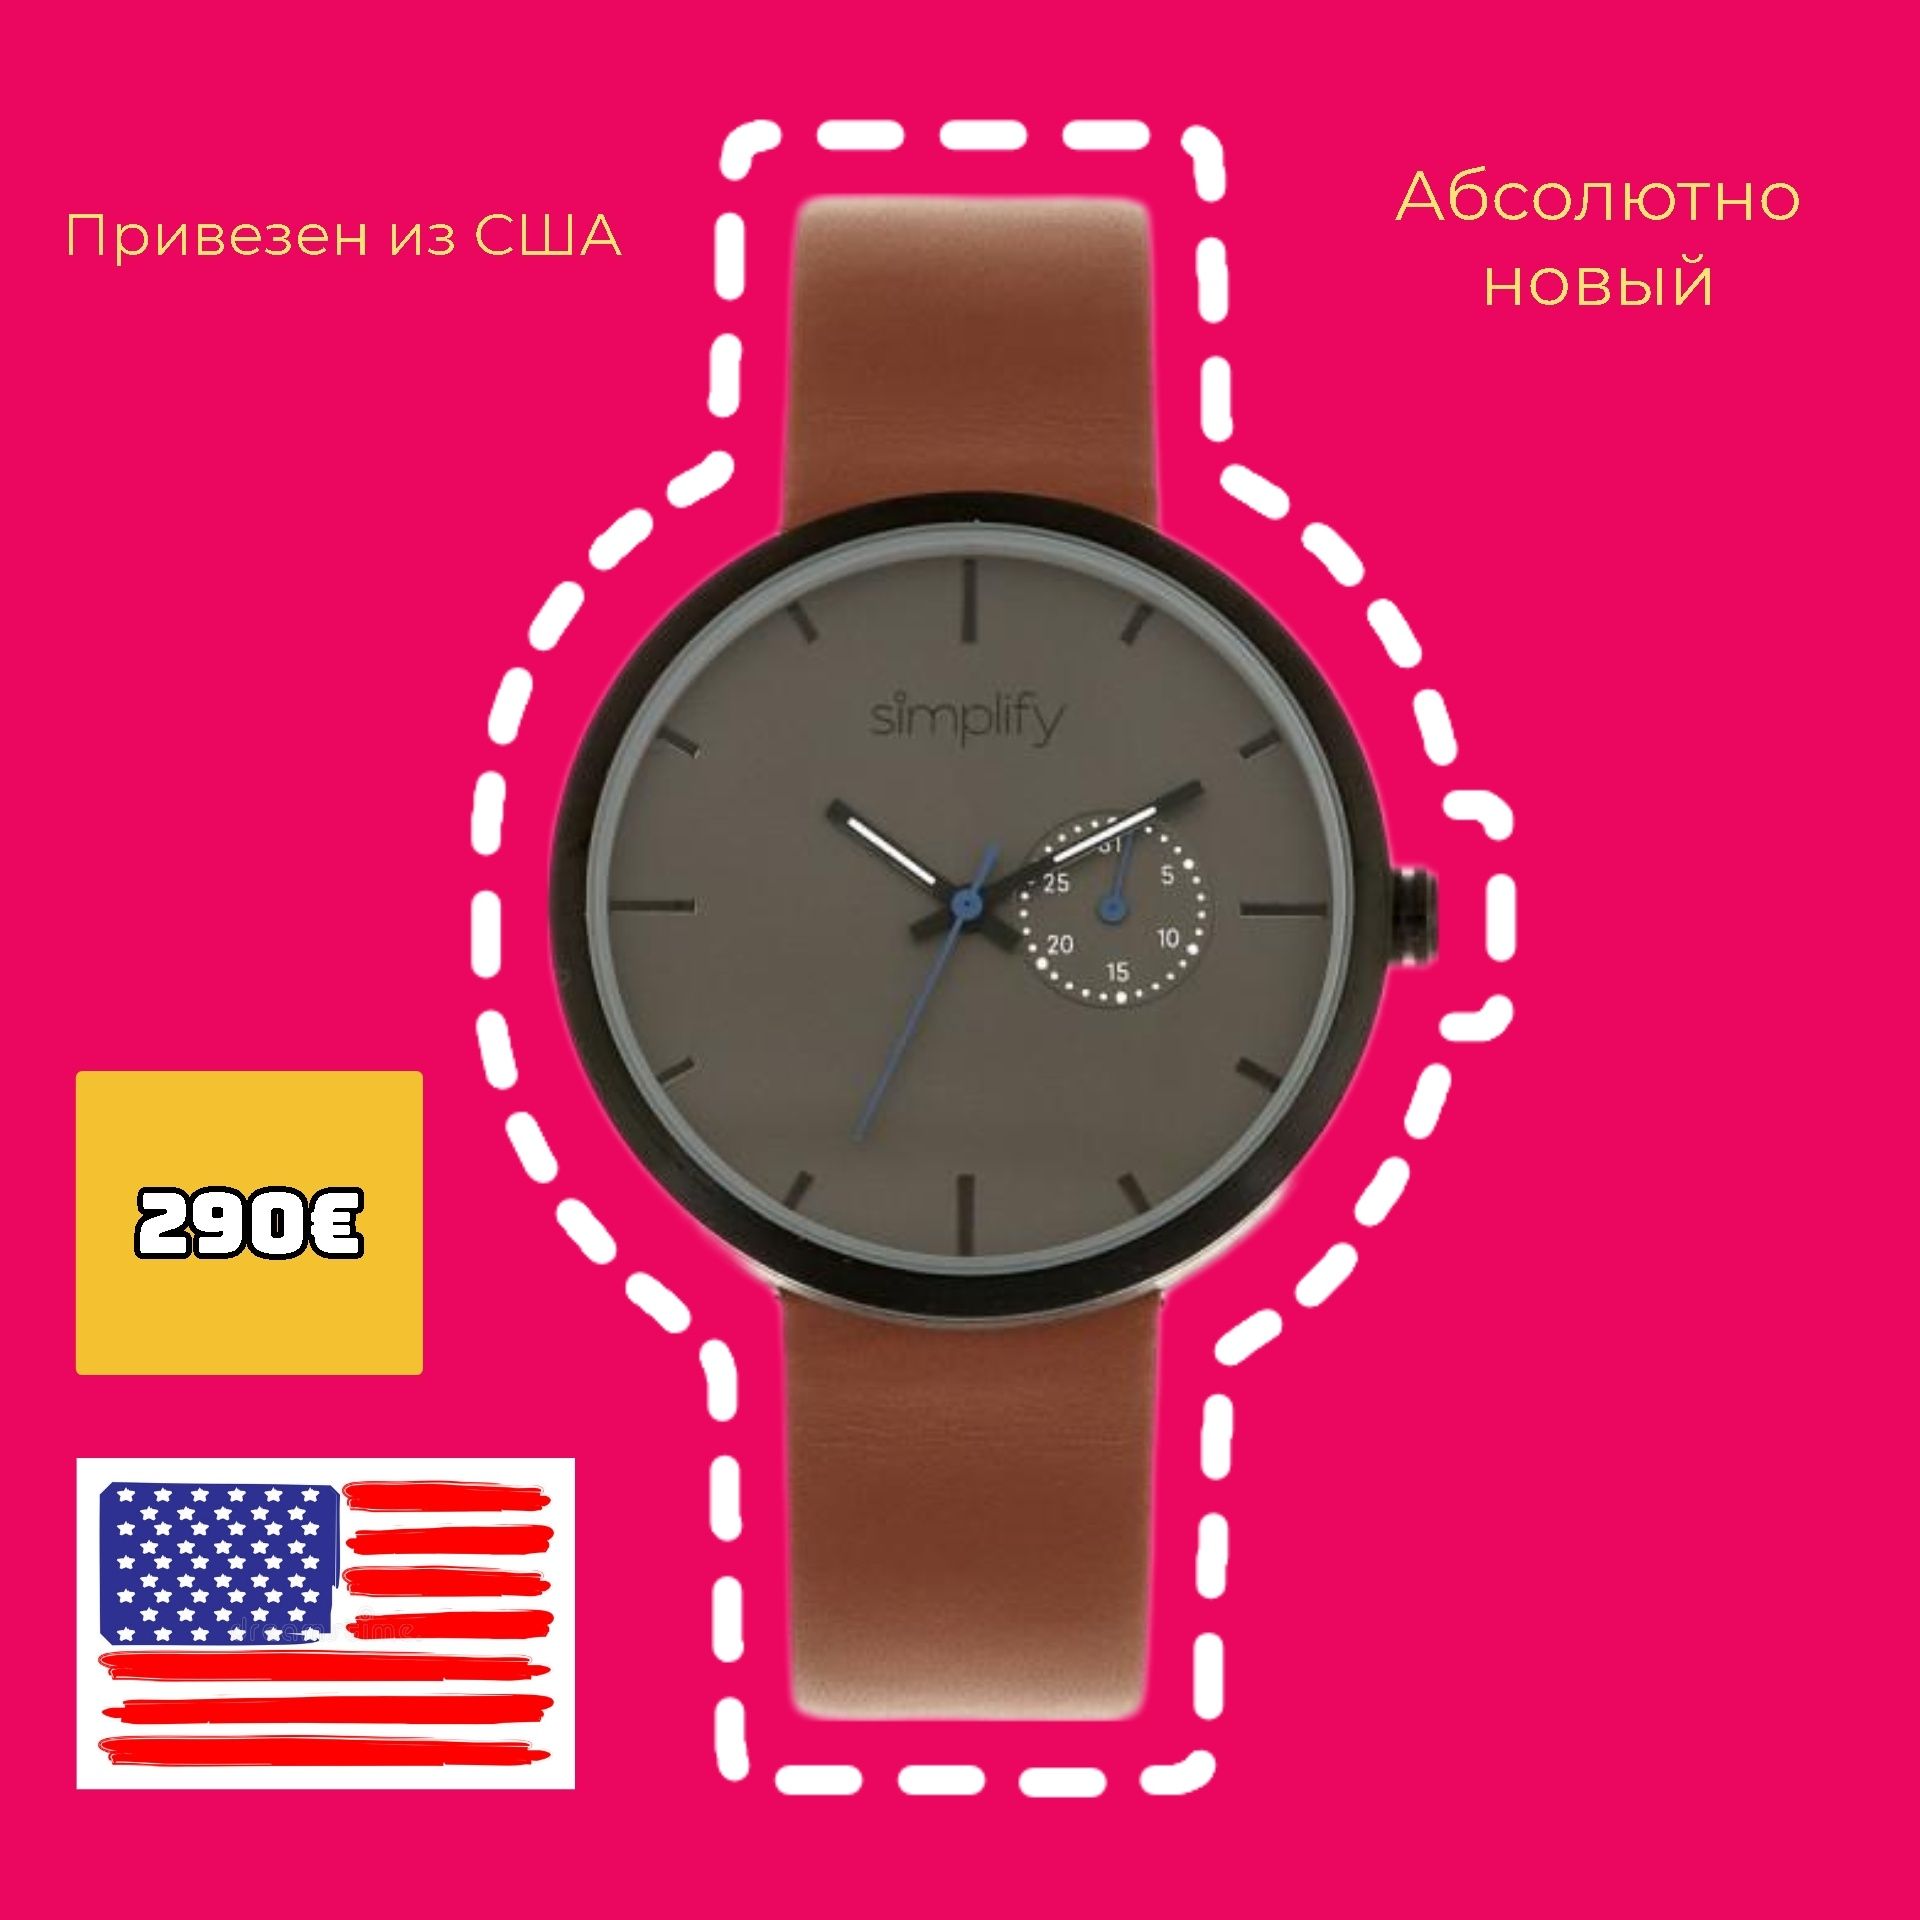 США Новые американские крутые женские часы Simplify Своя цена 290€